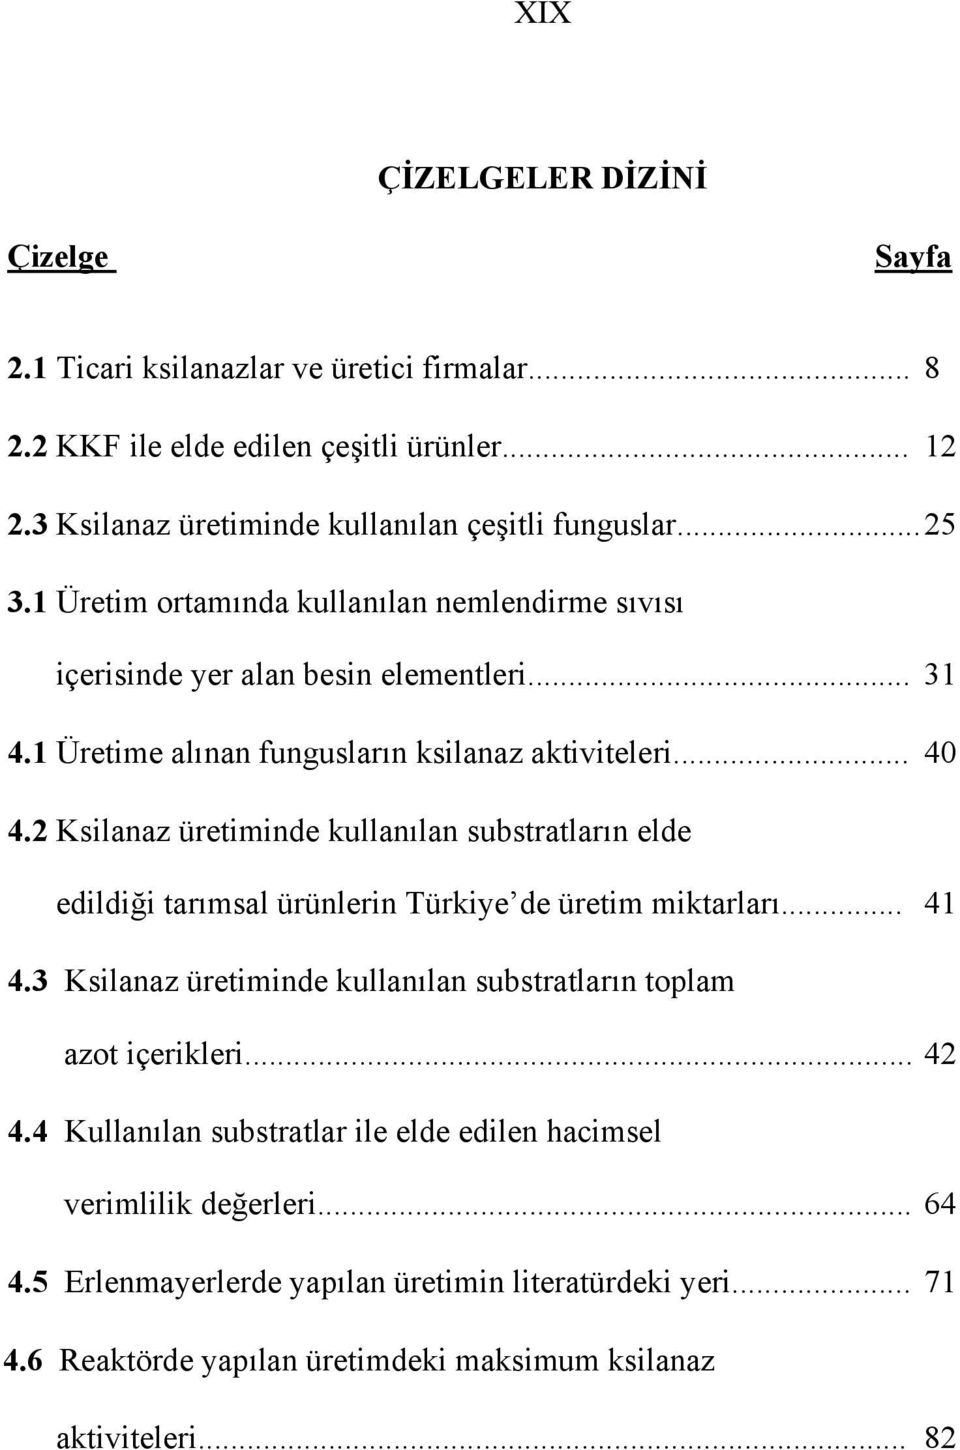 2 Ksilanaz üretiminde kullanılan substratların elde edildiği tarımsal ürünlerin Türkiye de üretim miktarları... 41 4.3 Ksilanaz üretiminde kullanılan substratların toplam azot içerikleri.